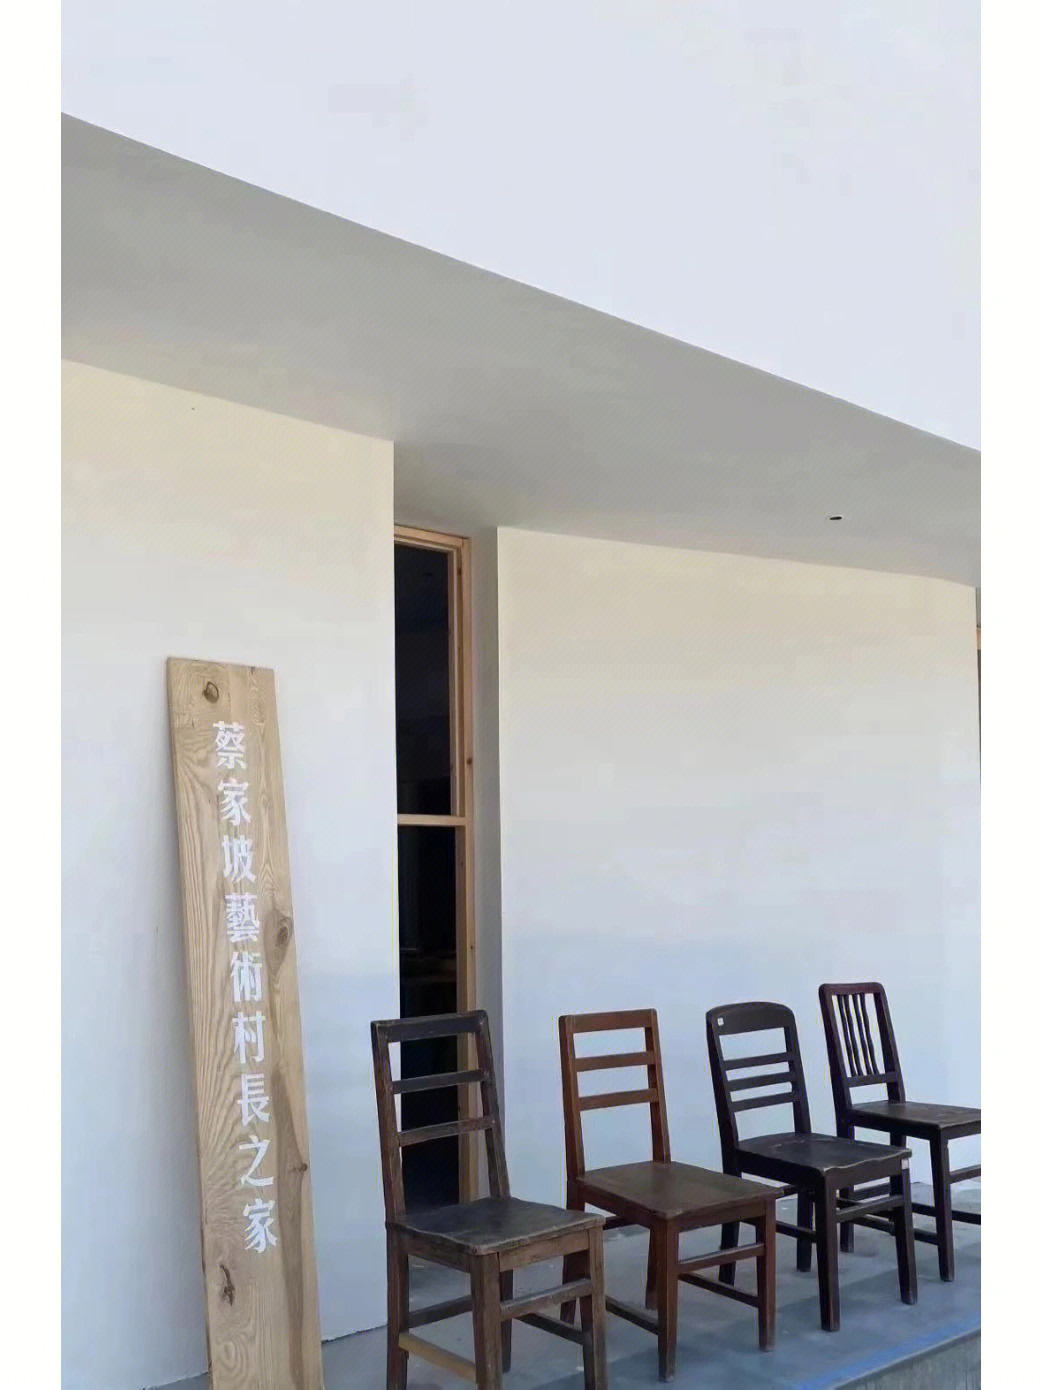 蔡家坡的艺术村长之家还在完善中和村史馆